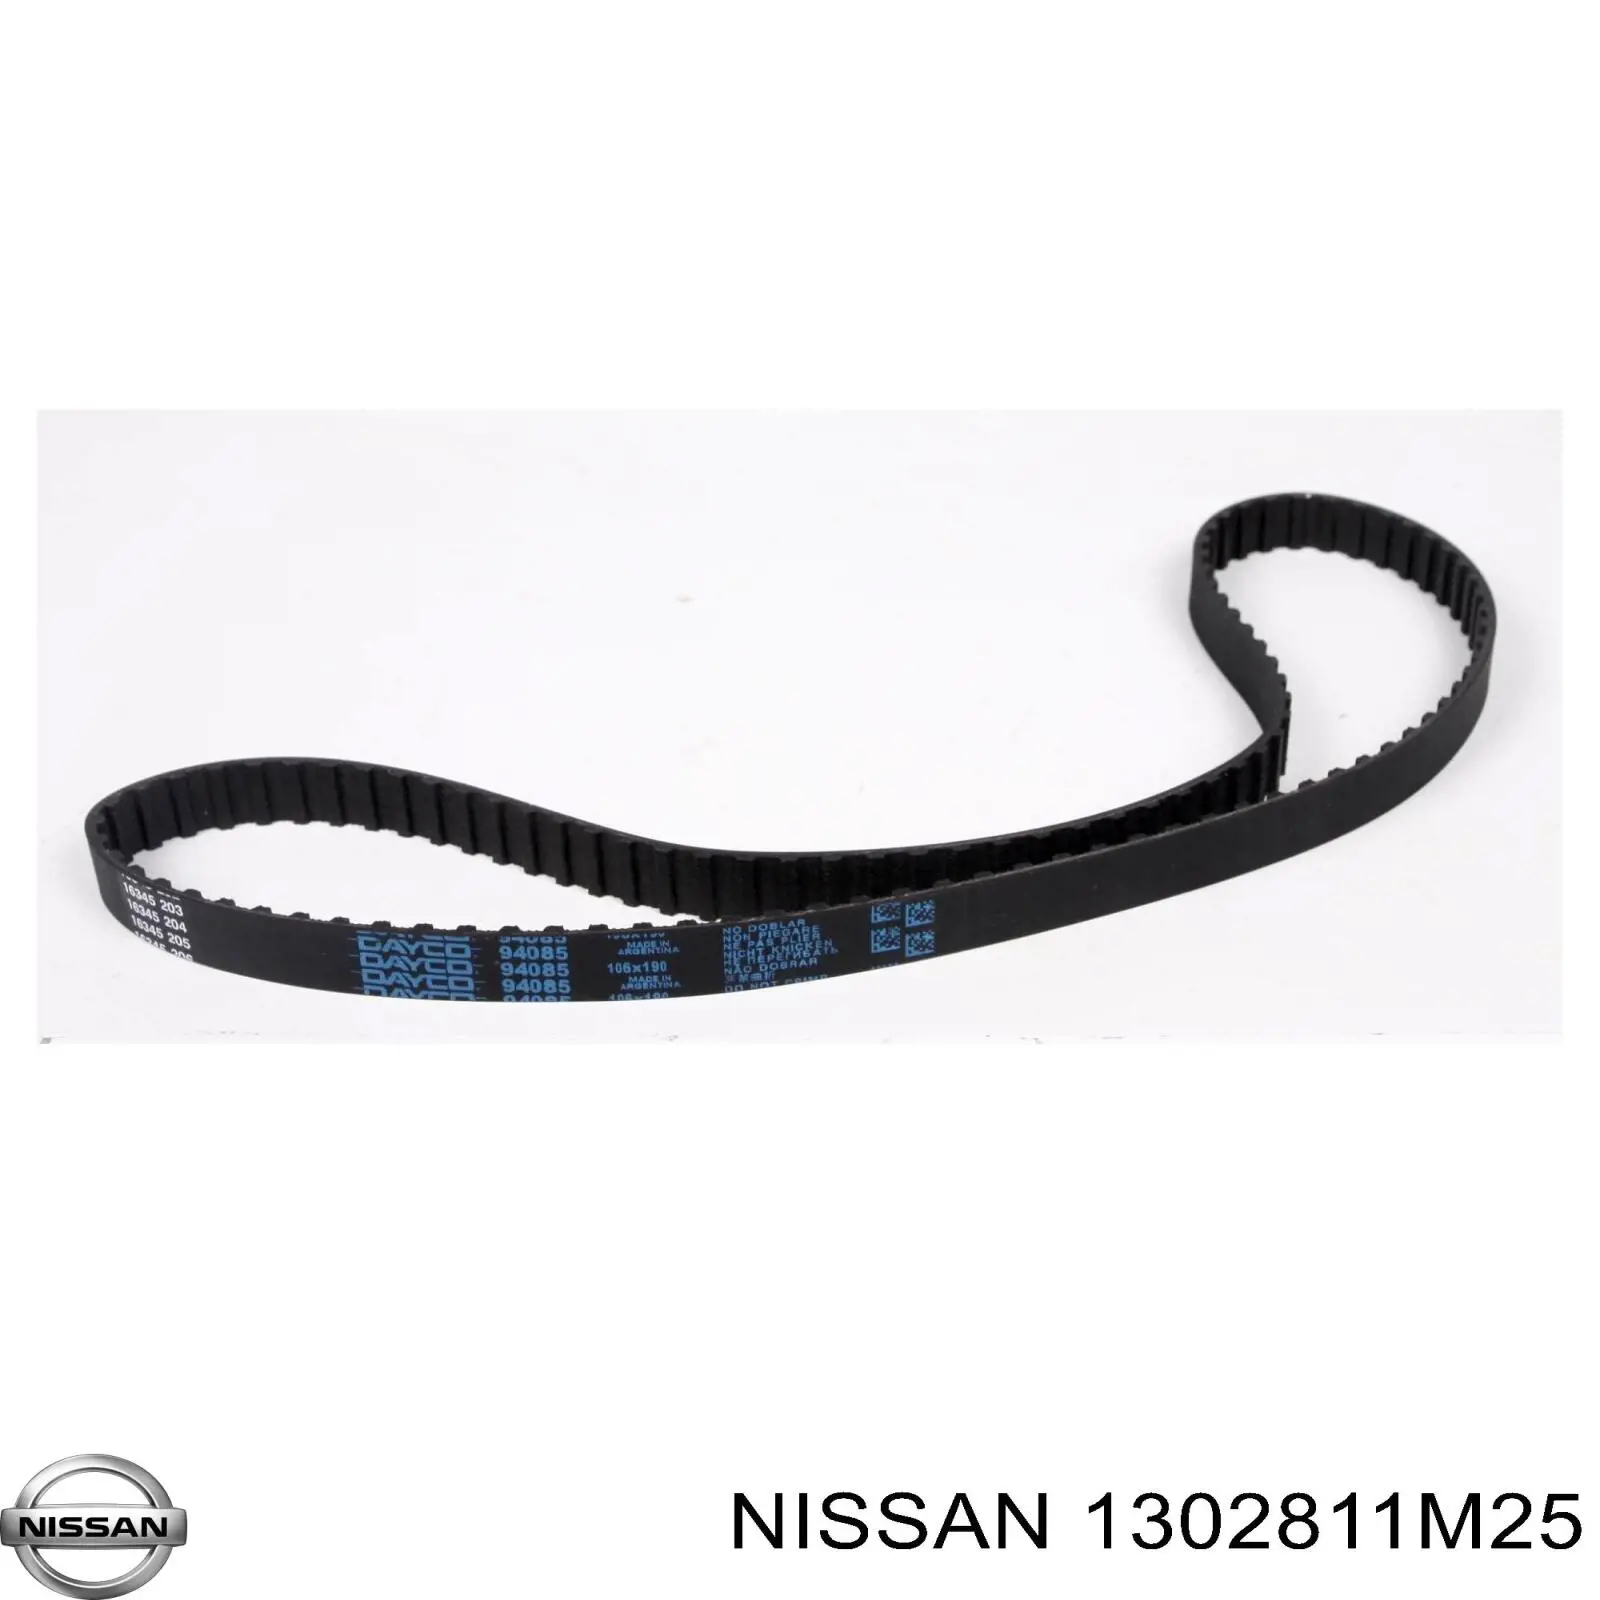 1302811M25 Nissan correa distribución